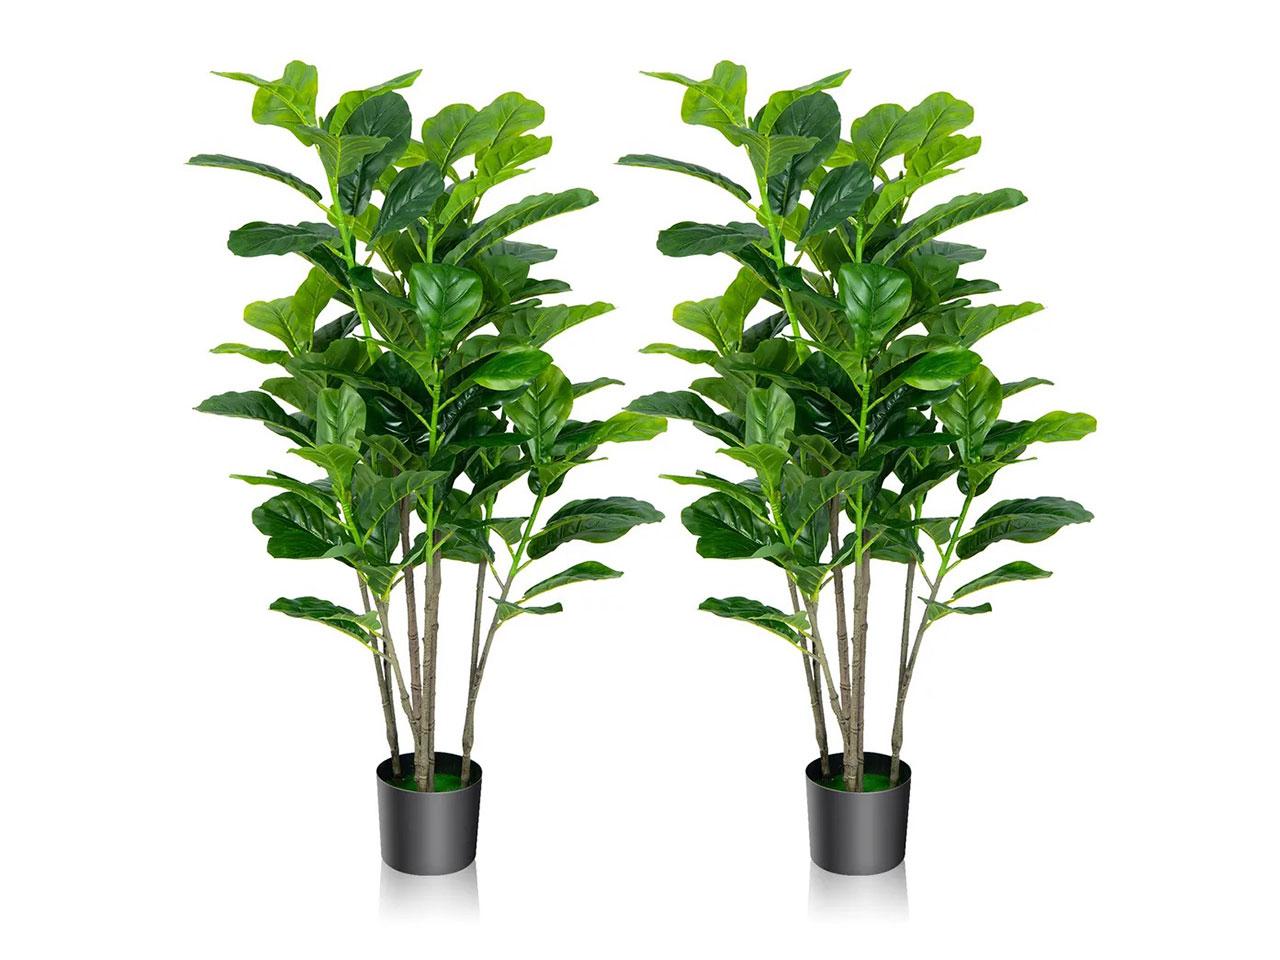 Sada 2 umělých rostlin HZ10077-2, fíkovník, dekorativní rostlina, pokojová rostlina, 130 cm 